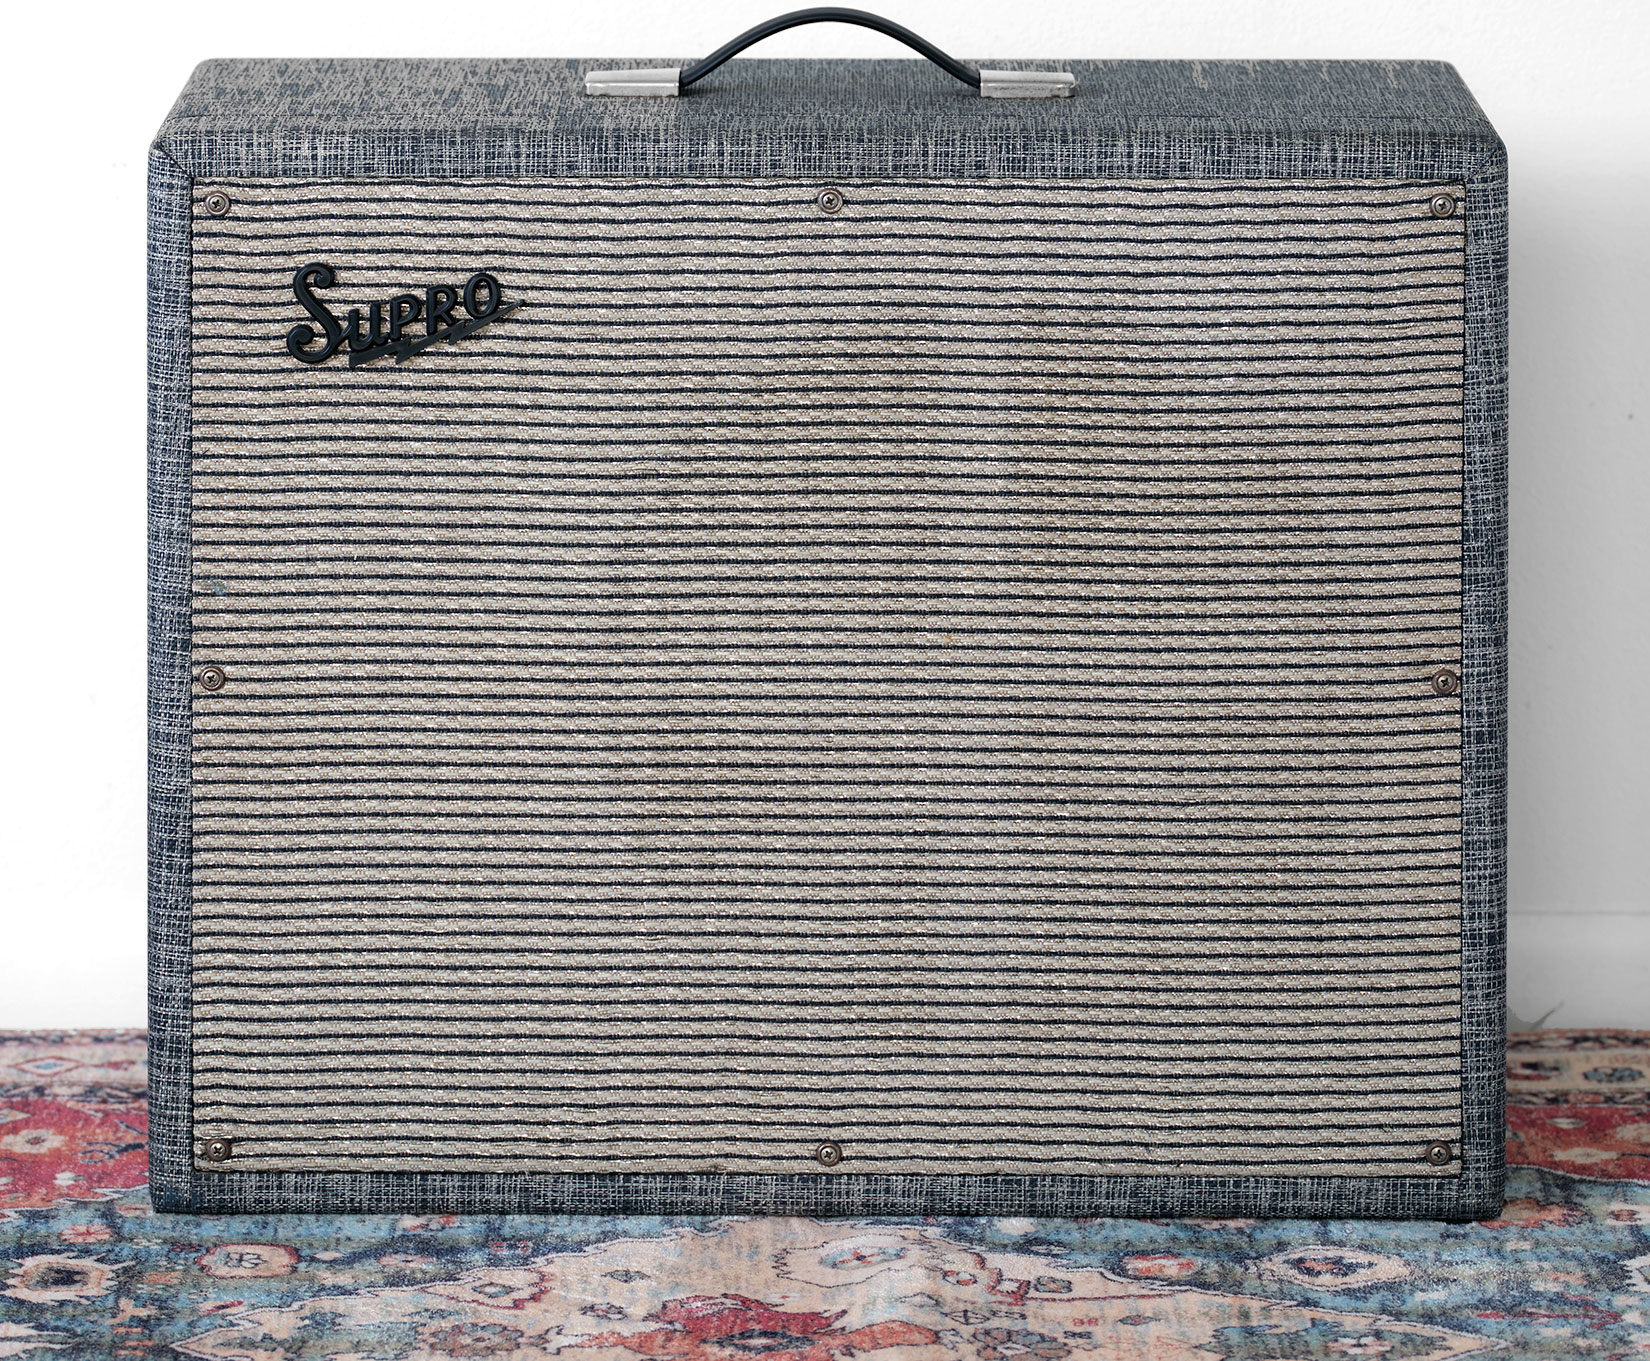 1966 Supro Thunderbolt Amplifier